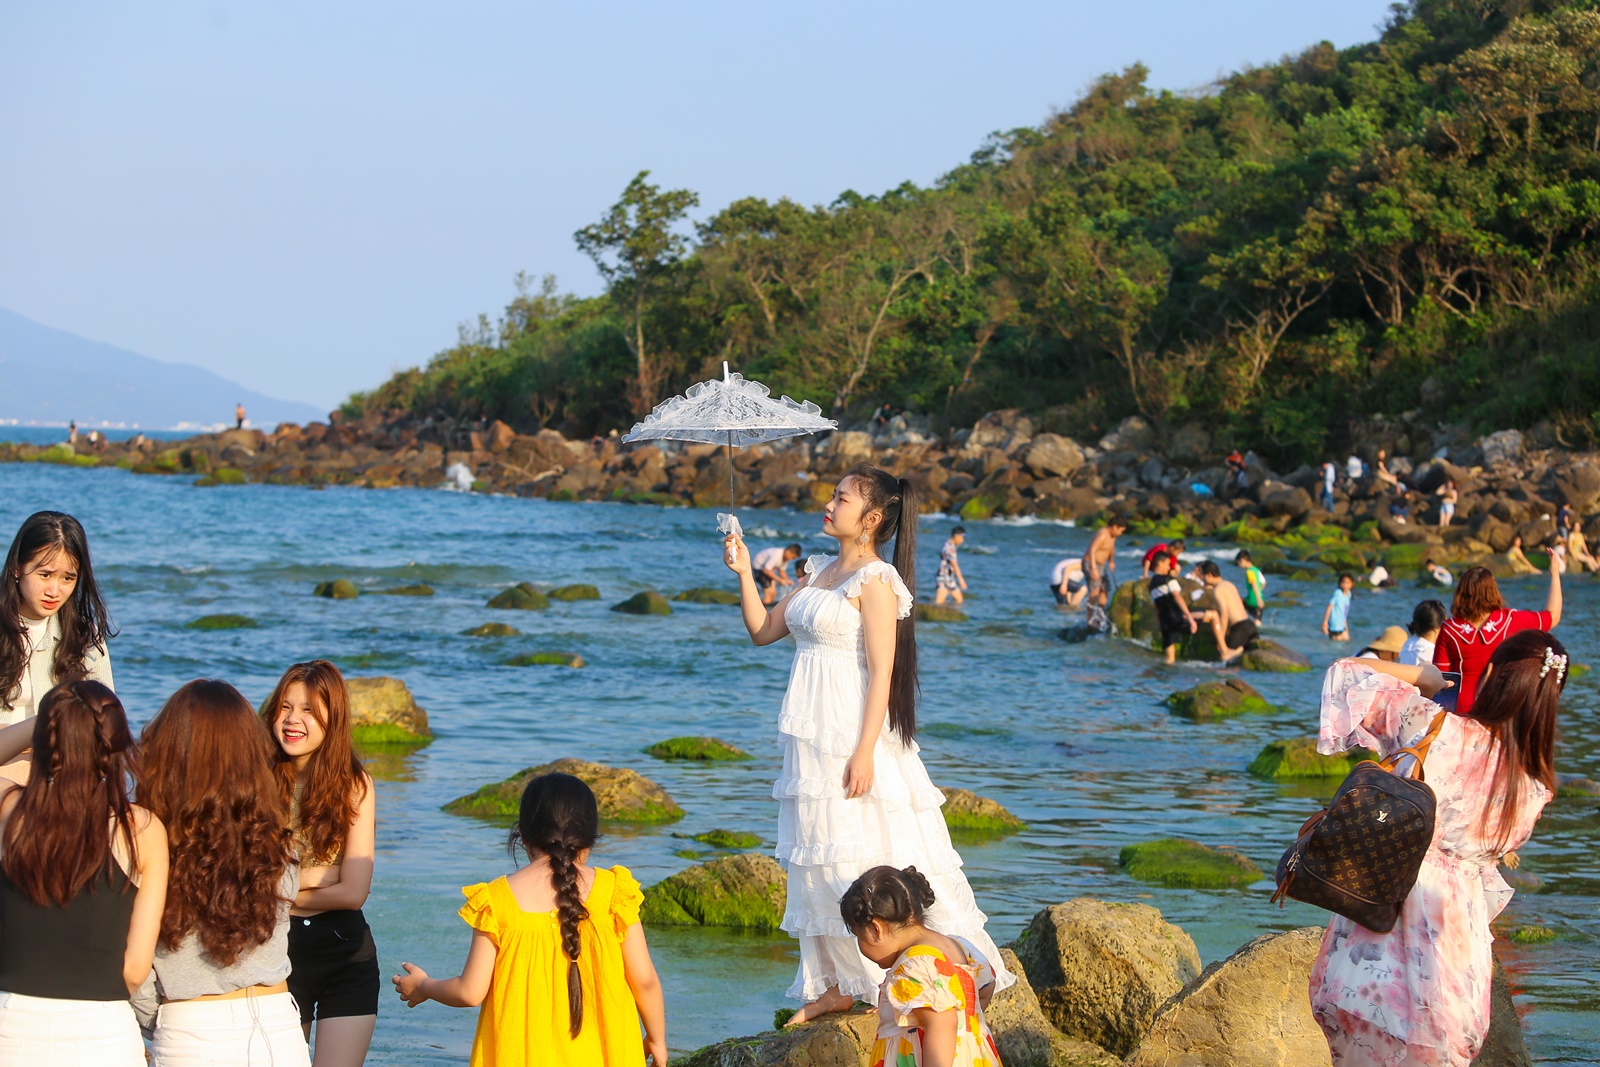 Ảnh: Chen chân chụp ảnh bãi rêu tuyệt đẹp ven biển Đà Nẵng - Ảnh 14.